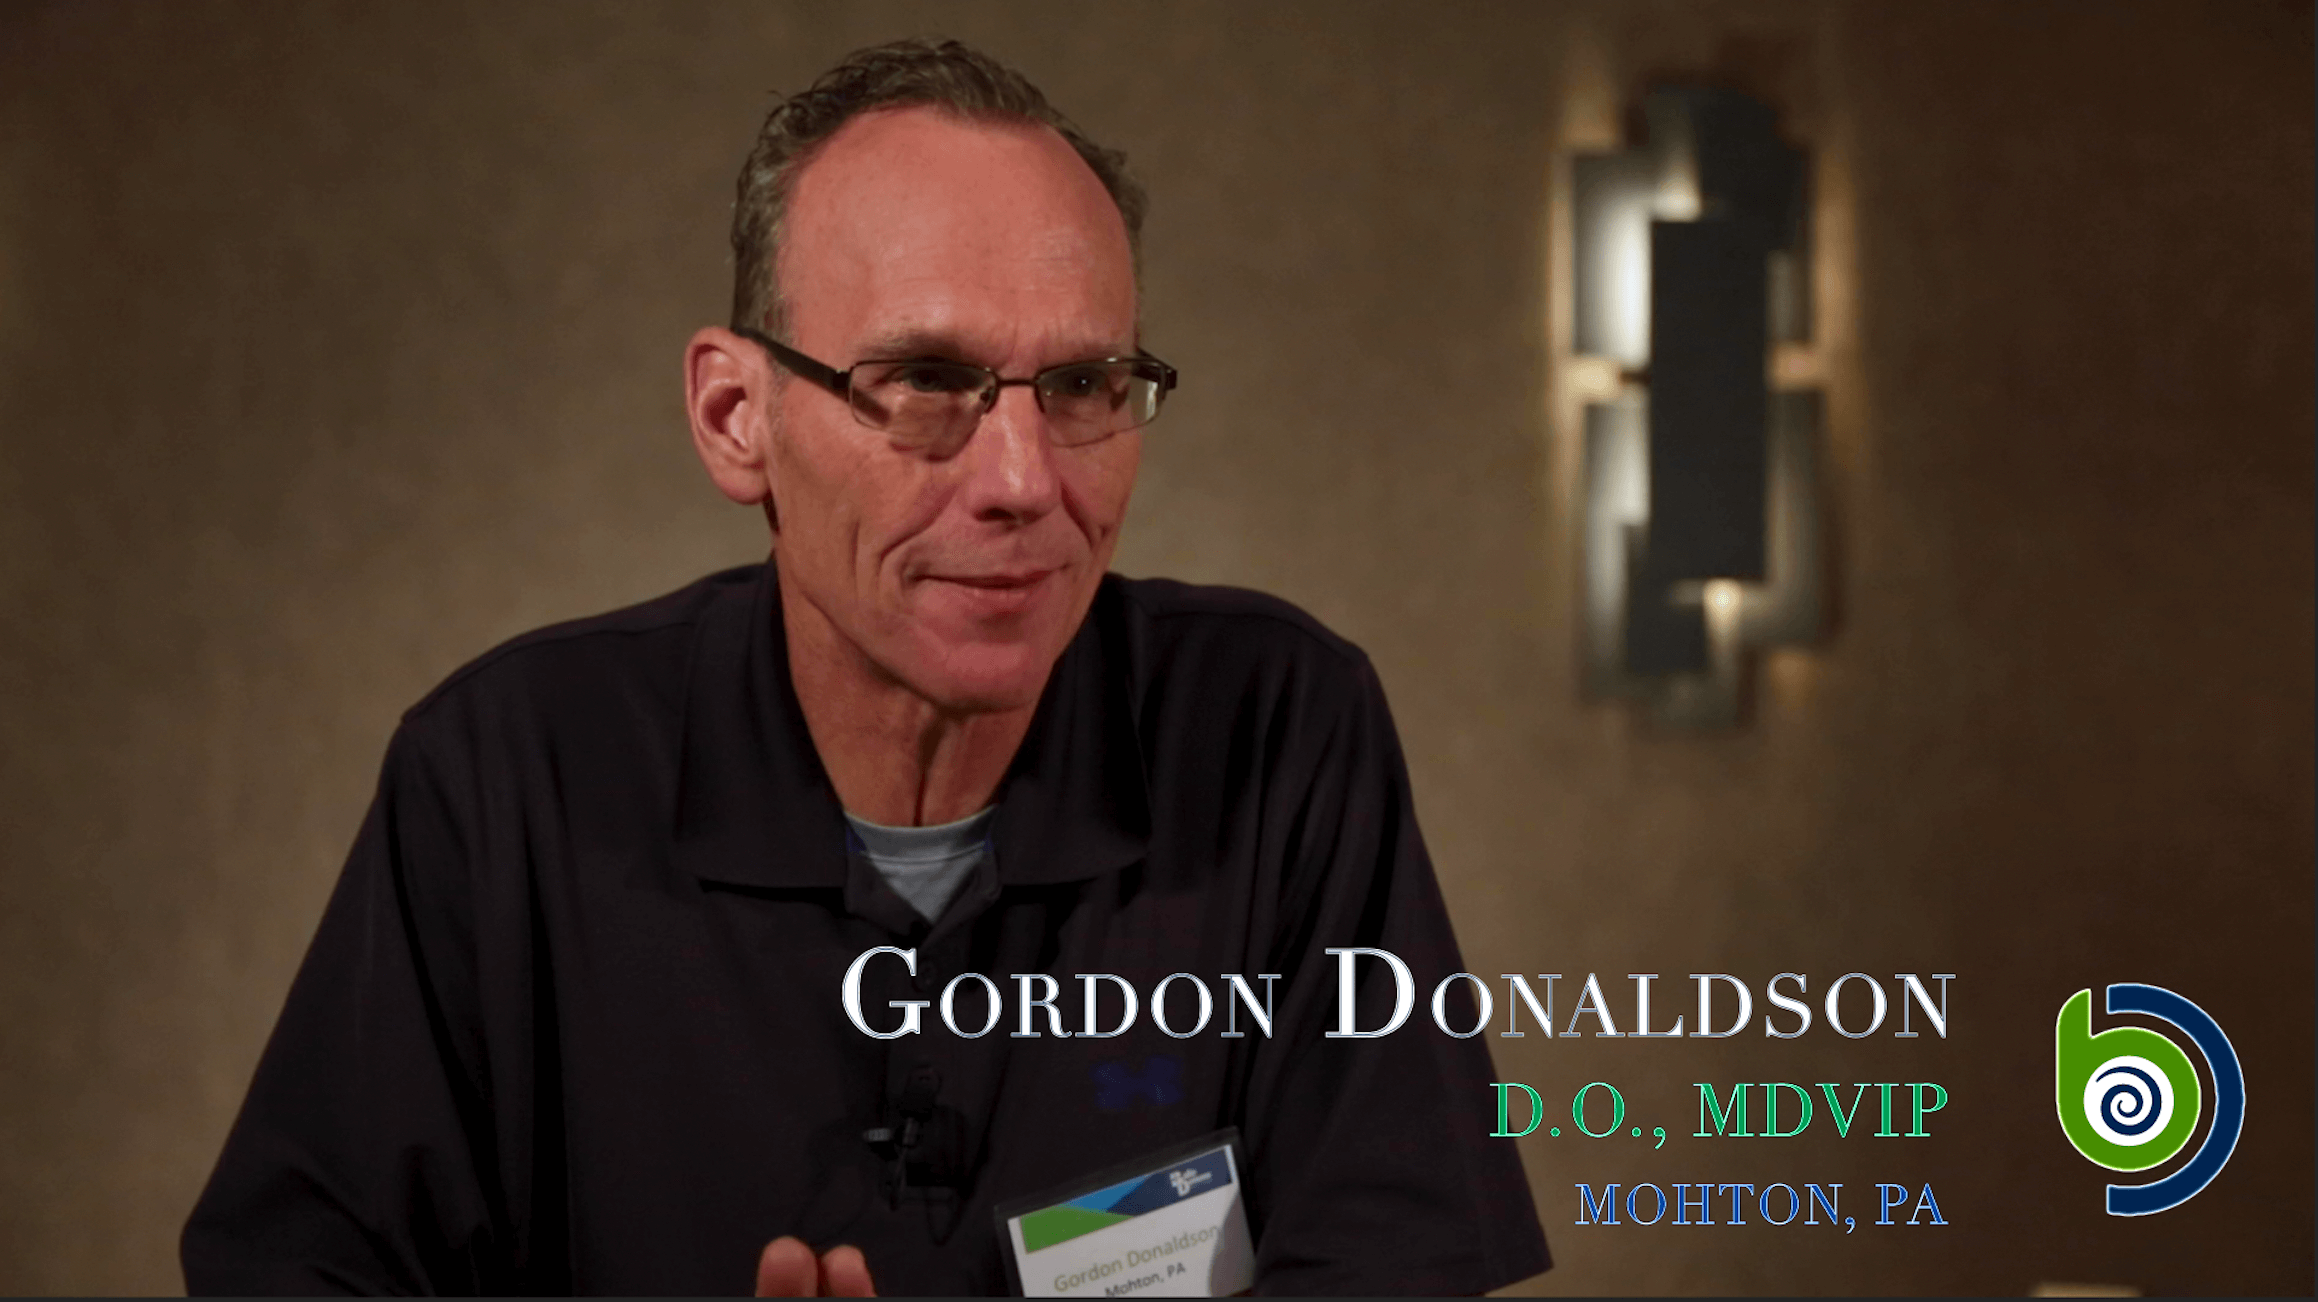 Gordon Donaldson